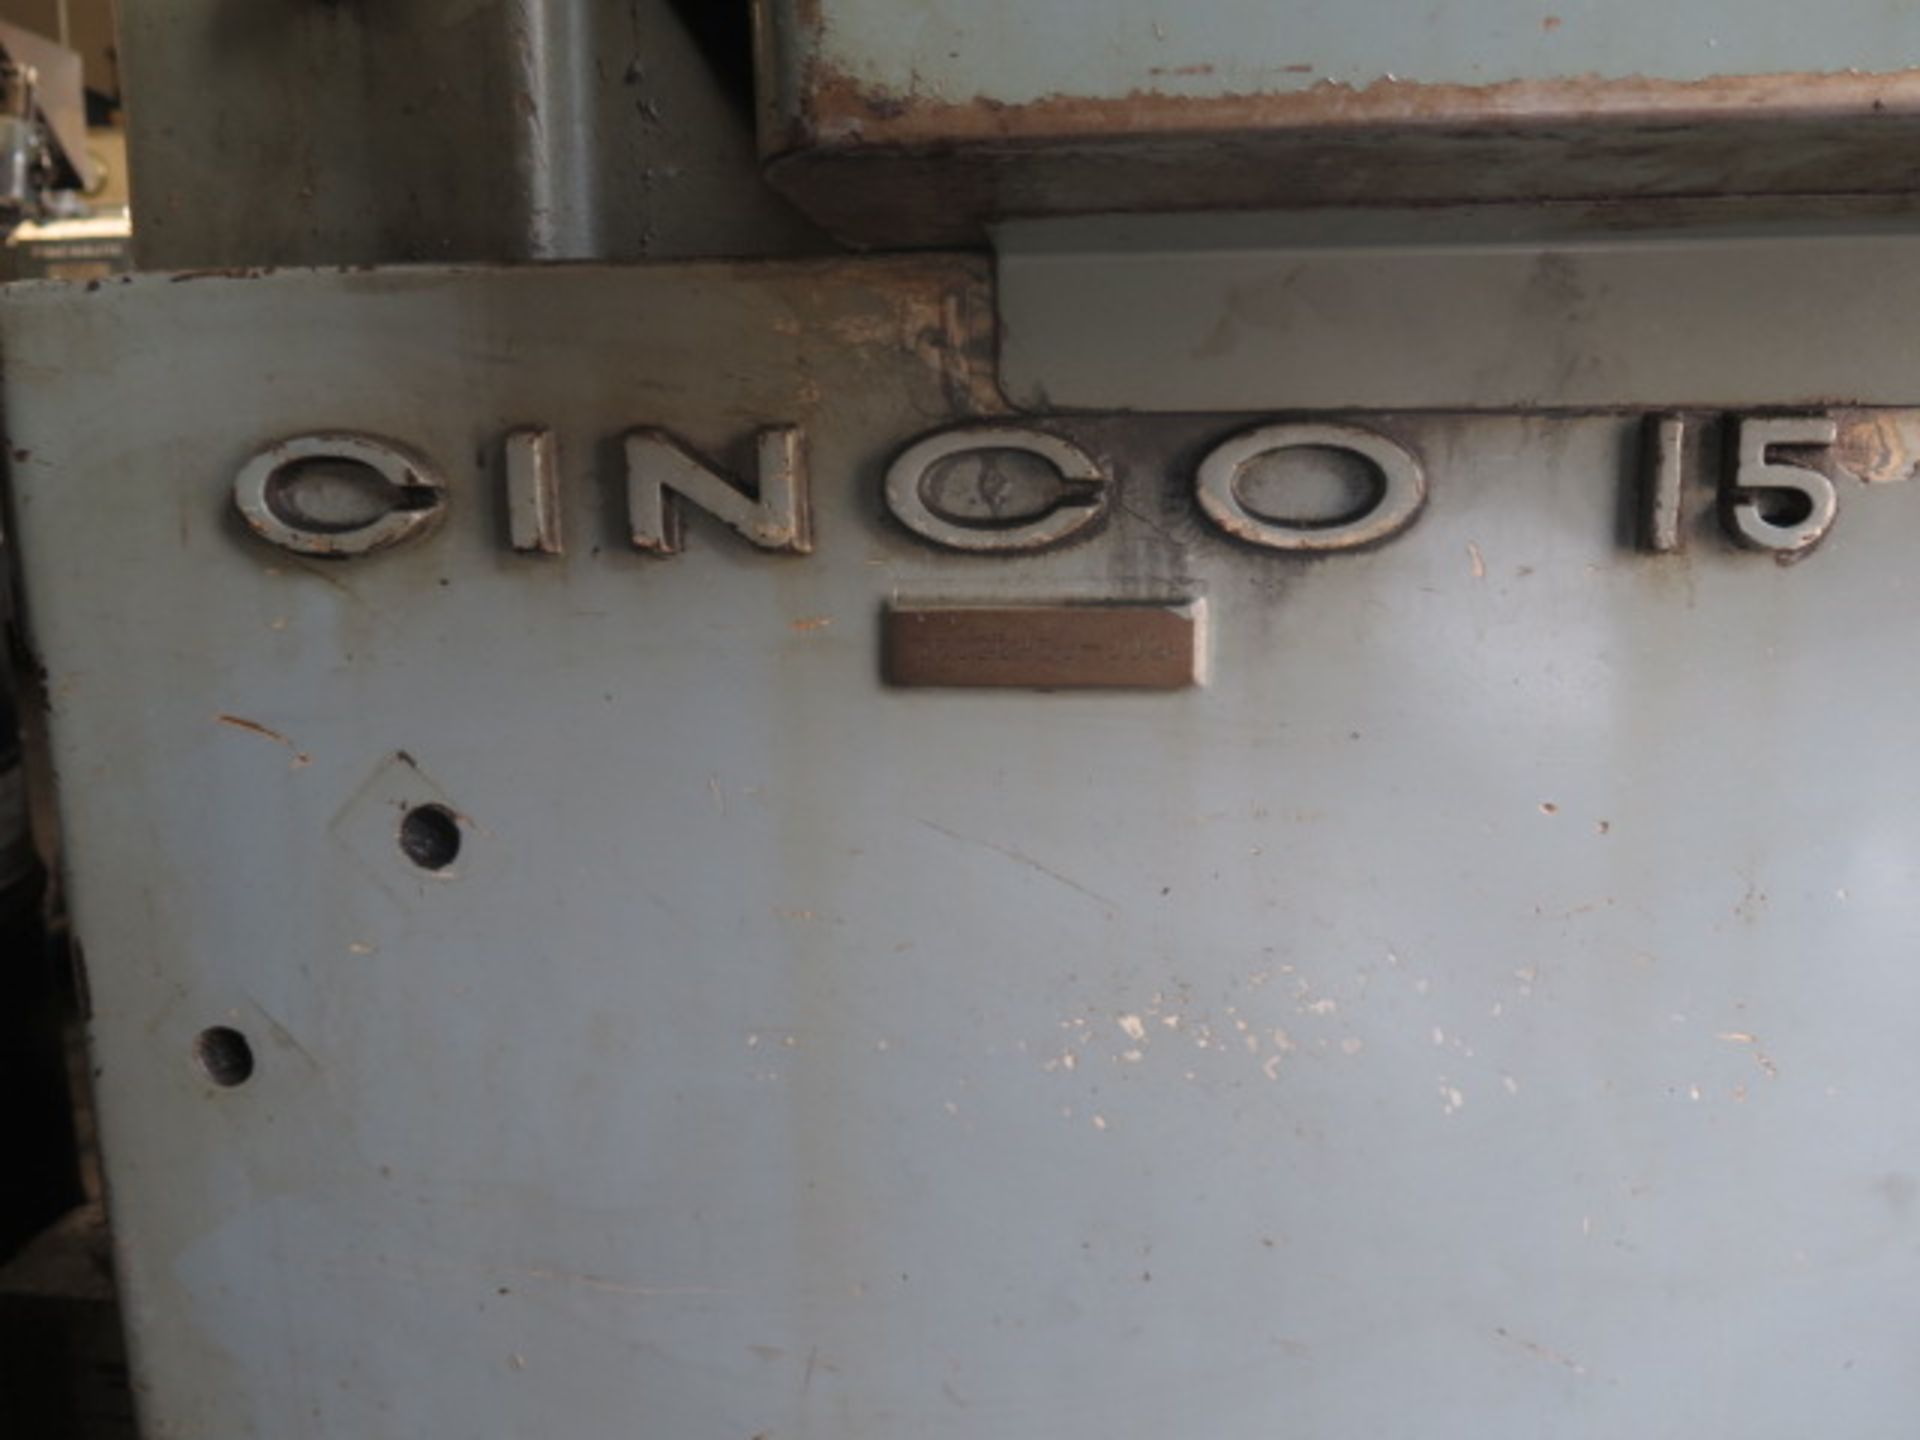 Cincinnati Milacron “CINCO-15” Centerless Grinder s/n 35028H5U-0024 w/ 21” Grinding Wheel, - Image 9 of 10